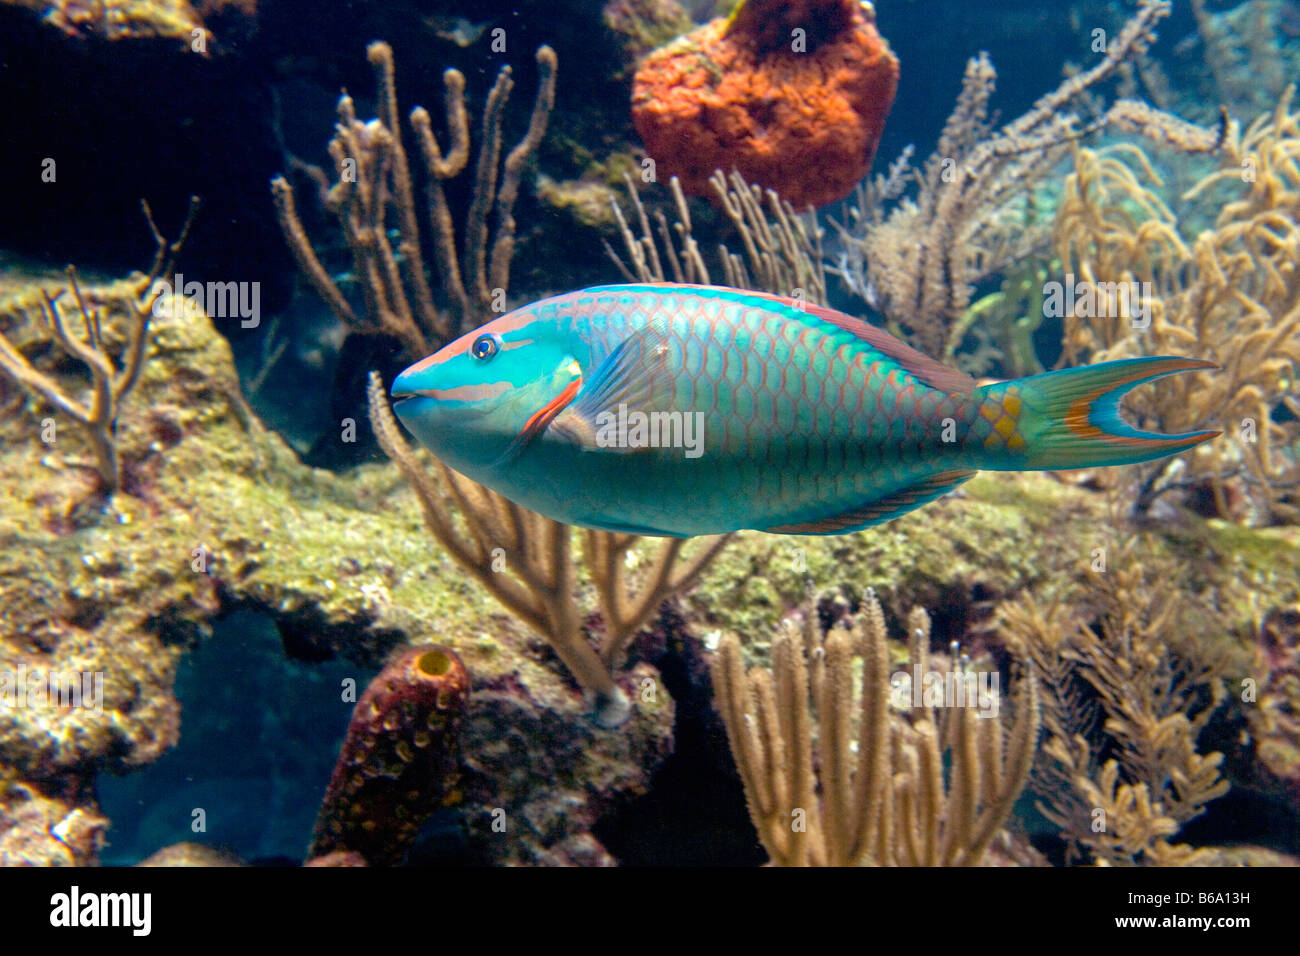 Mexico, Quintana Roo, Tulum, Xcaret nature park, Coral Reef Aquarium, Parrot fish. Stock Photo